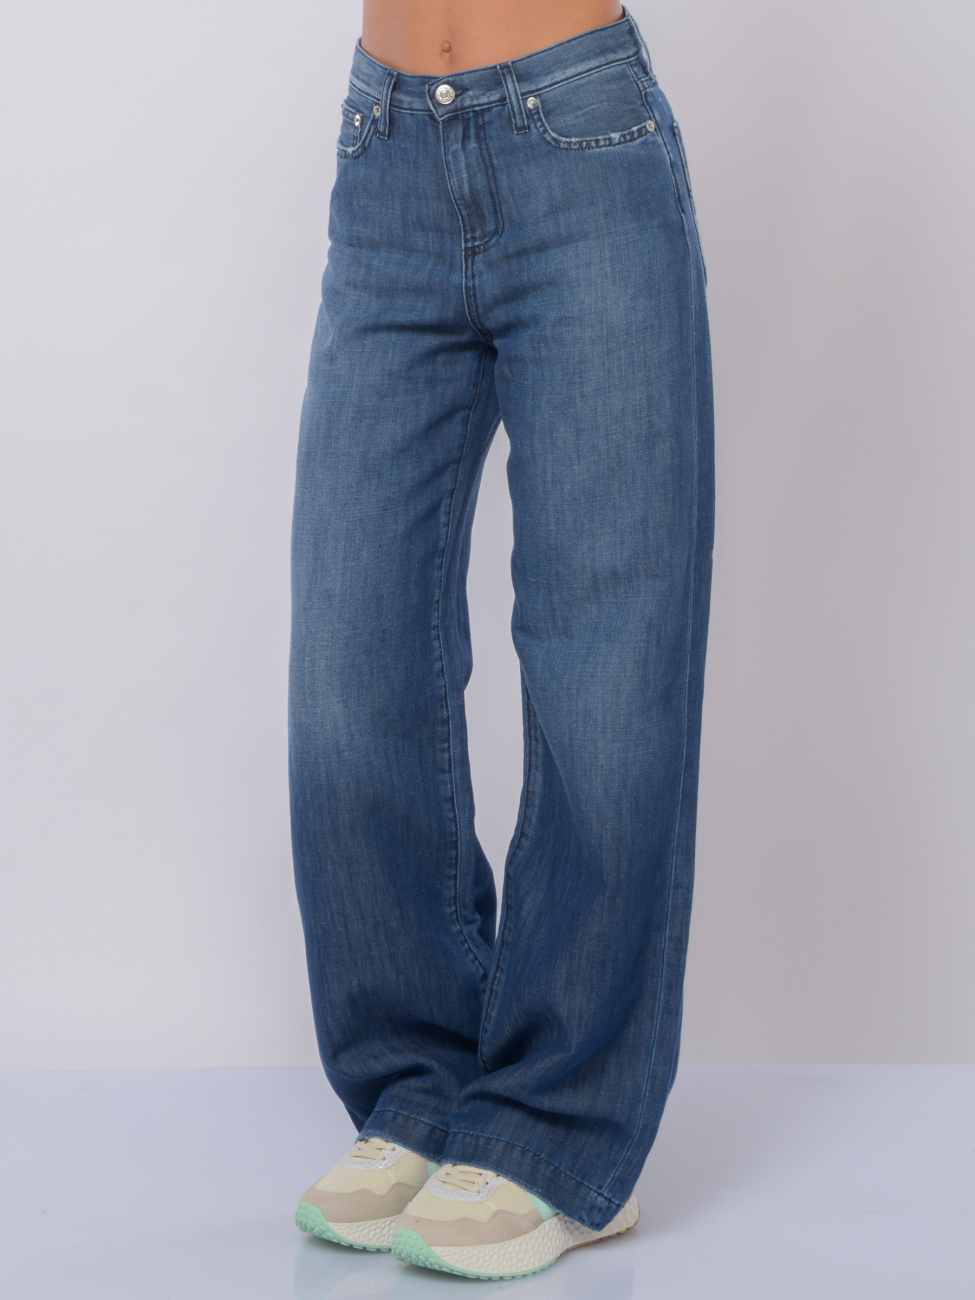 jeans da donna Roy Roger's ampi in cotone e lino